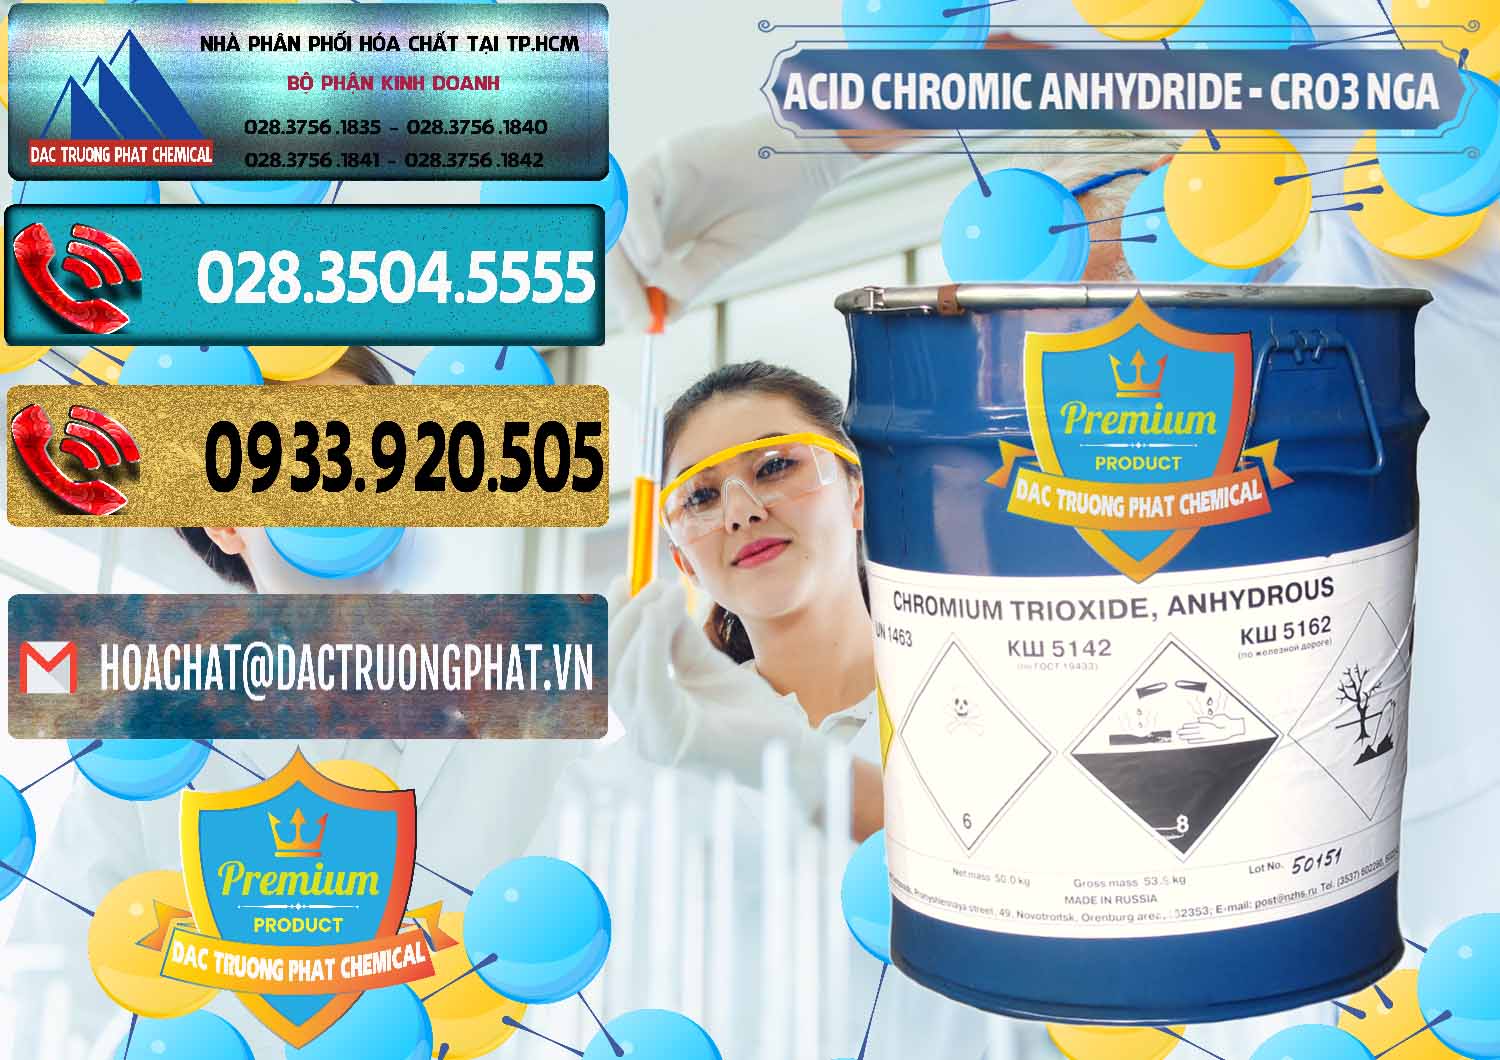 Cty chuyên kinh doanh ( bán ) Acid Chromic Anhydride - Cromic CRO3 Nga Russia - 0006 - Nơi cung cấp ( bán ) hóa chất tại TP.HCM - hoachatdetnhuom.com